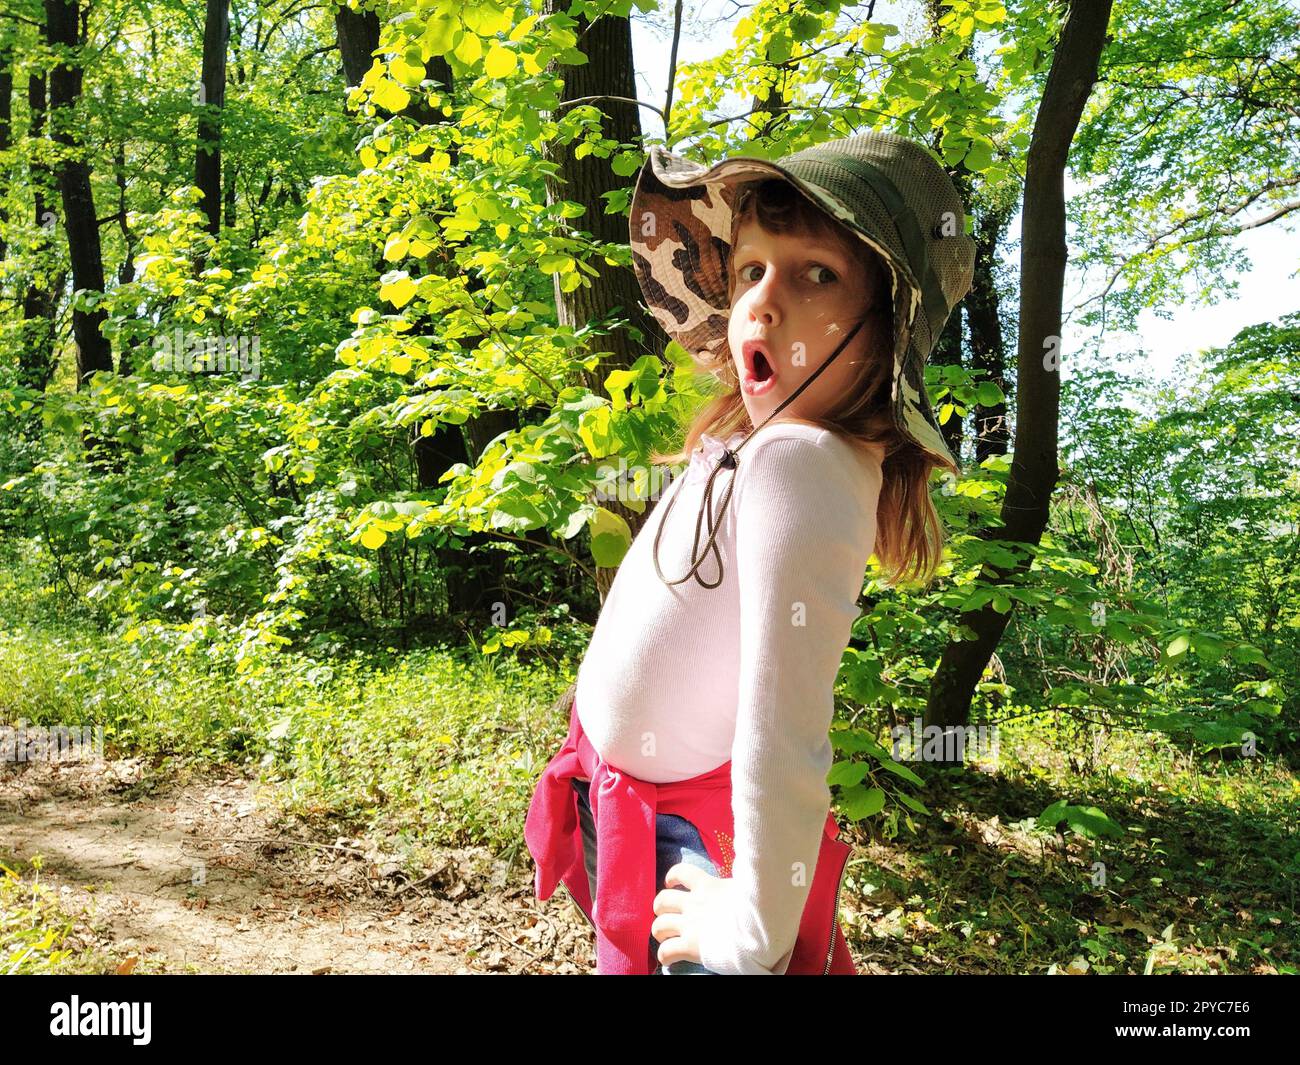 Hübsches Mädchen, 6 Jahre alt, mit Jagdhut, macht sich ein Grimace im Gesicht. Gefühl der Überraschung, Angst oder Entmutigung. Das Kind dreht sich um und schaut in die Kamera. Wald im Hintergrund Stockfoto